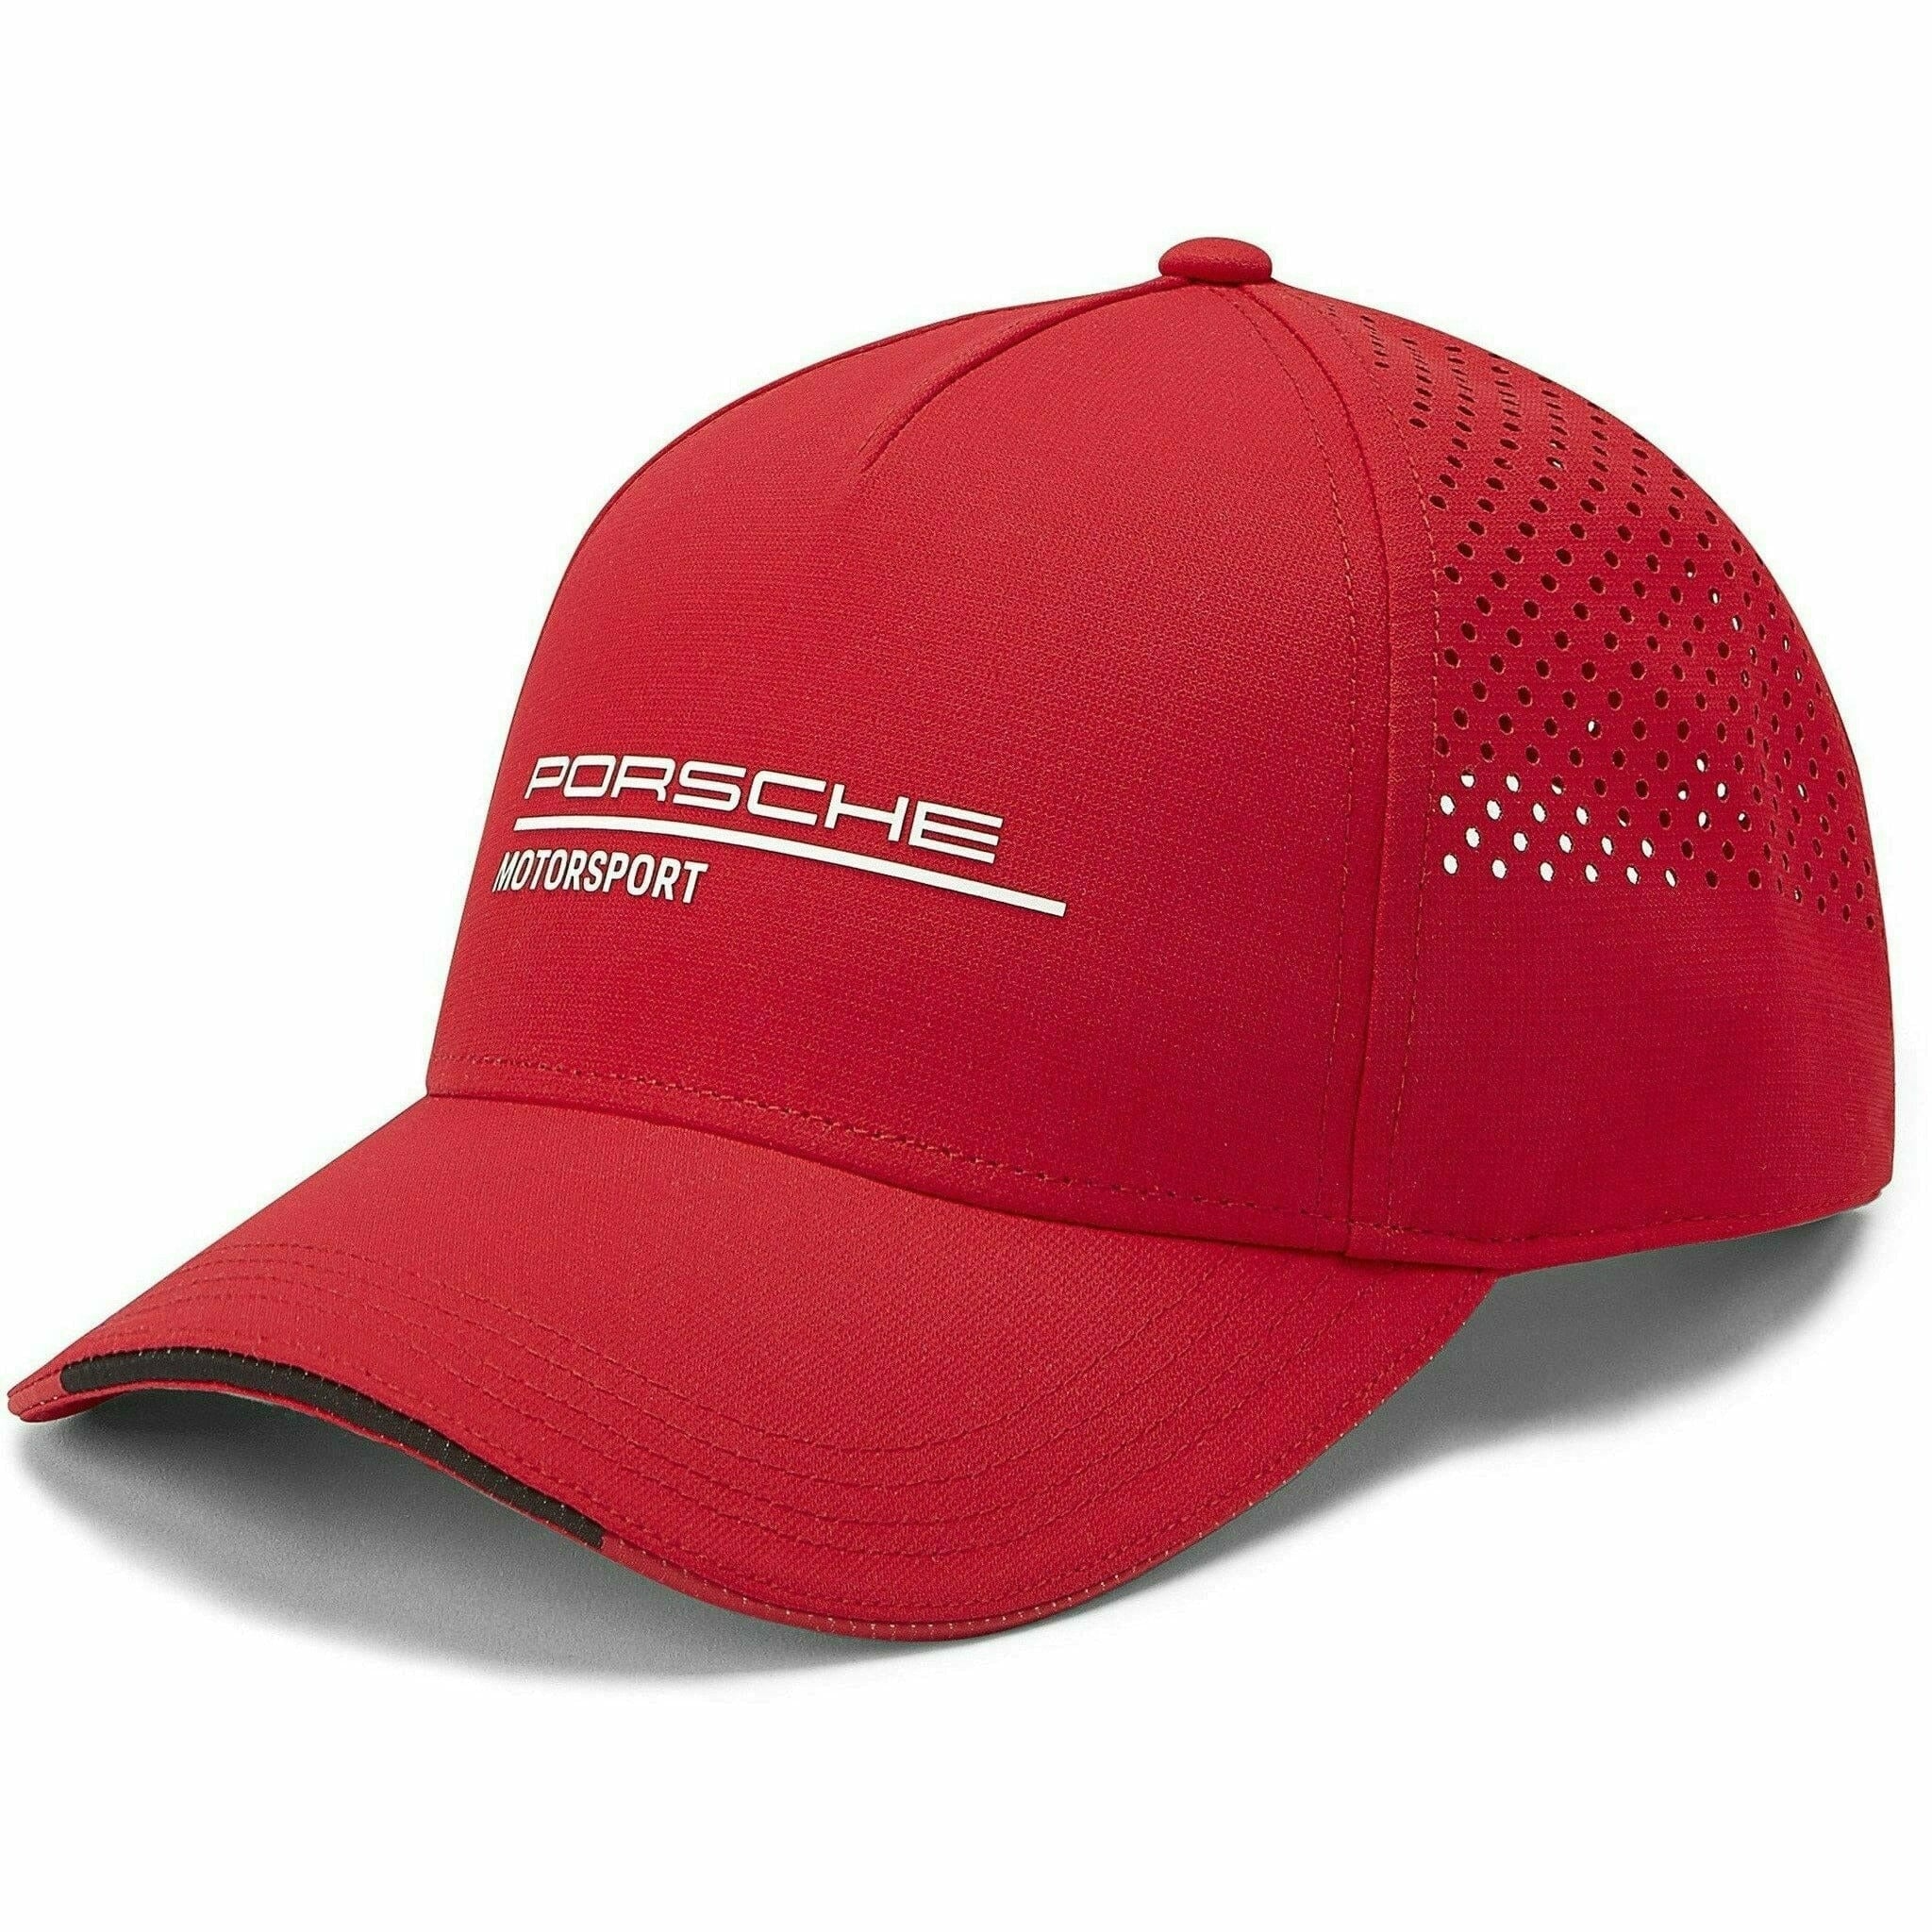 Porsche Motorsports Red Hat